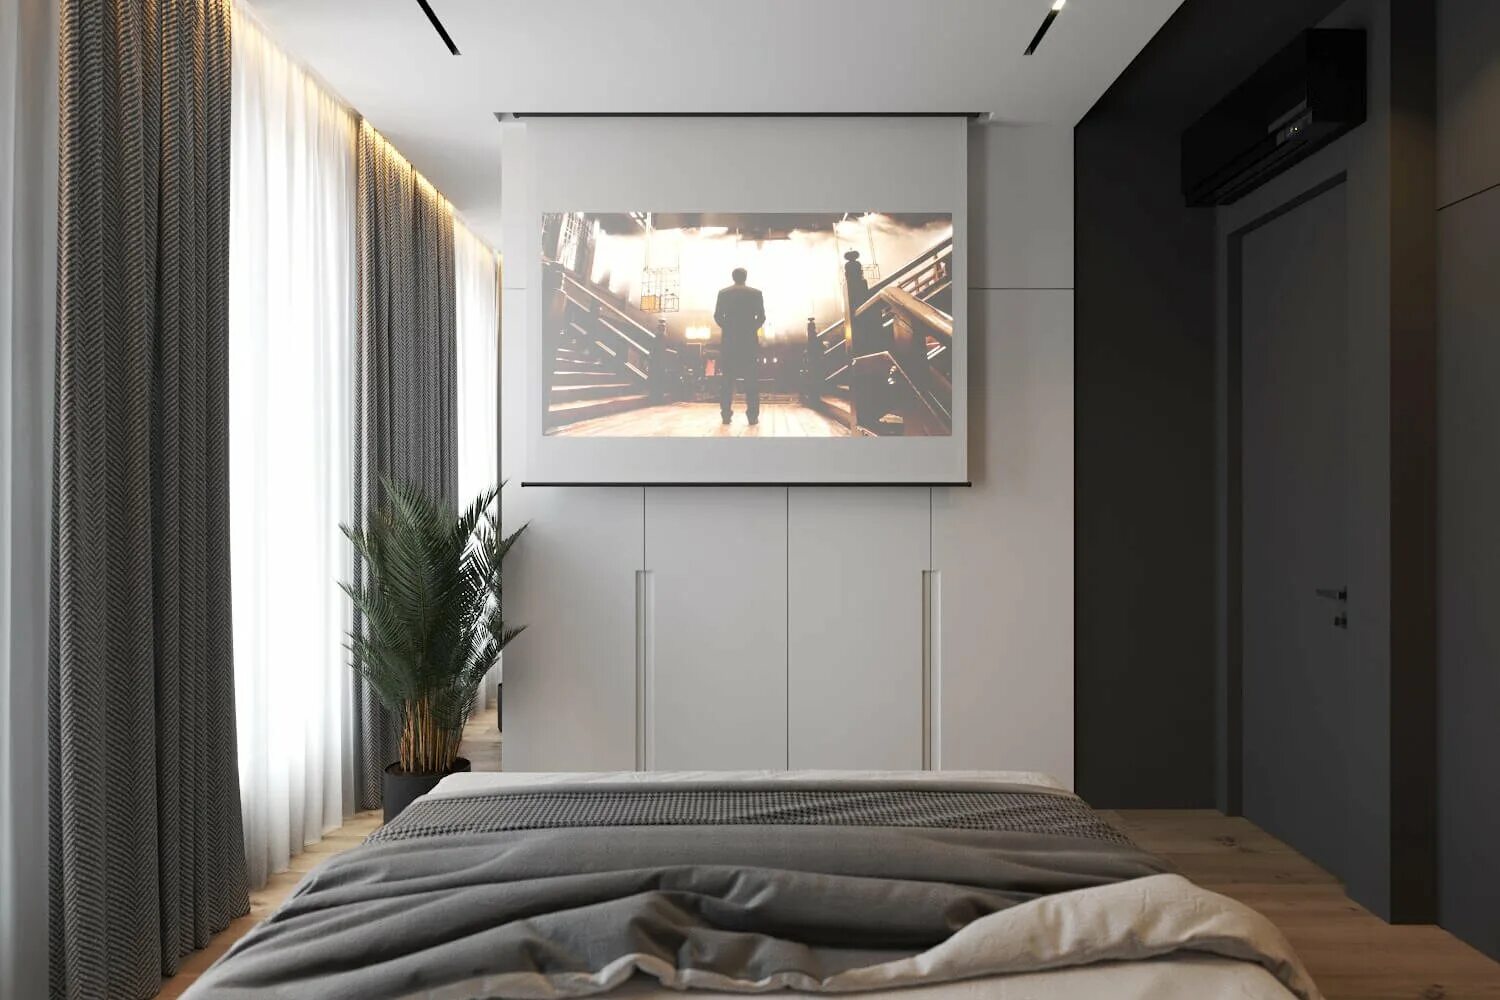 Вандер парк Геометриум. Телевизор в спальне. Спальня с большим телевизором. Проектор в интерьере спальни. Телевизор в маленькой комнате